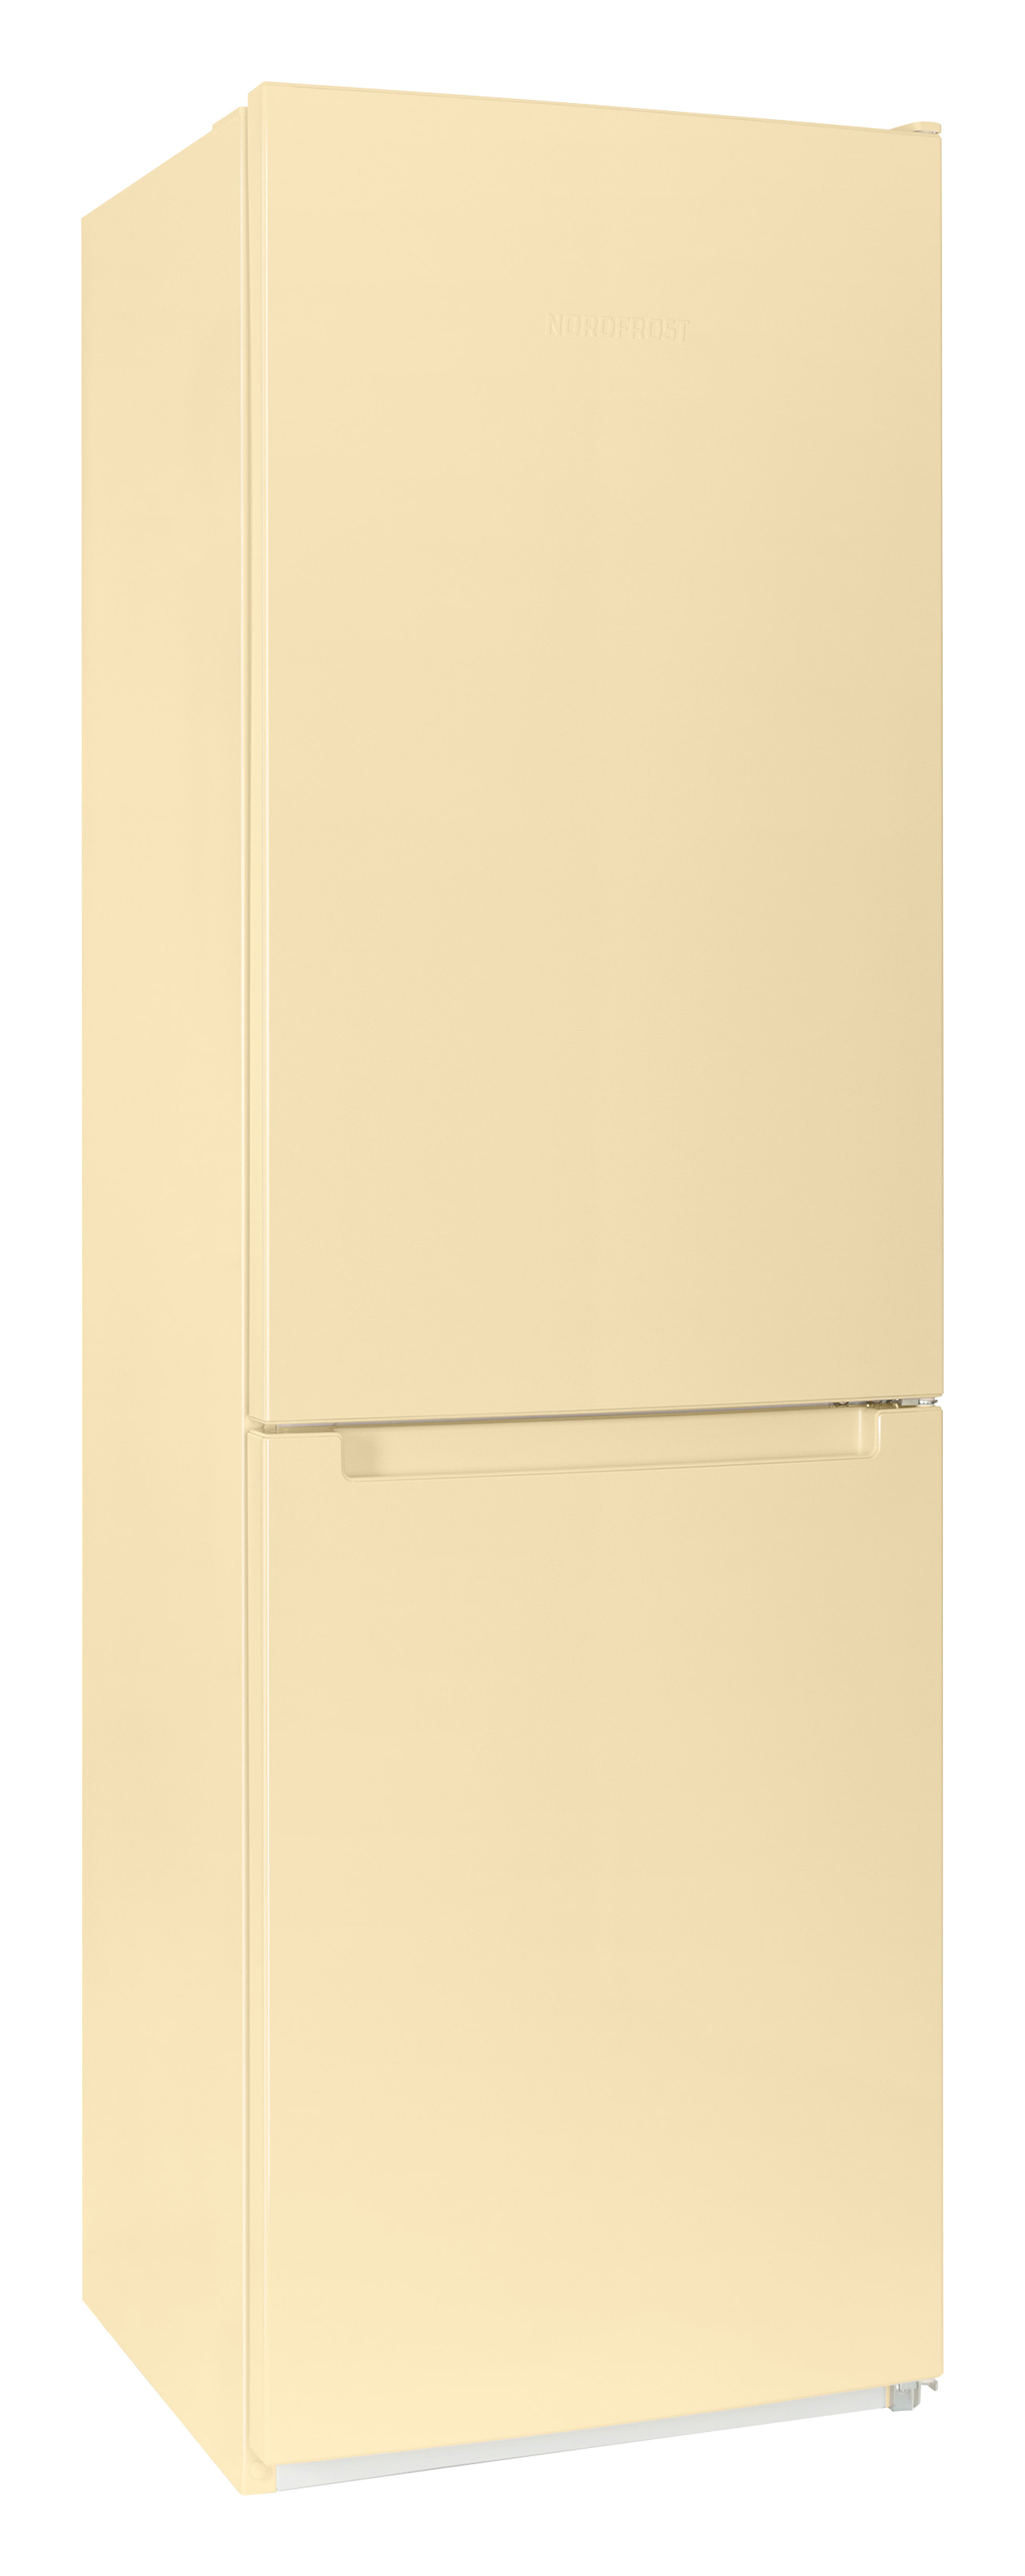 Двухкамерный холодильник NORDFROST NRB 152 E — купить в интернет-магазине Премьер Техно — Фото 1